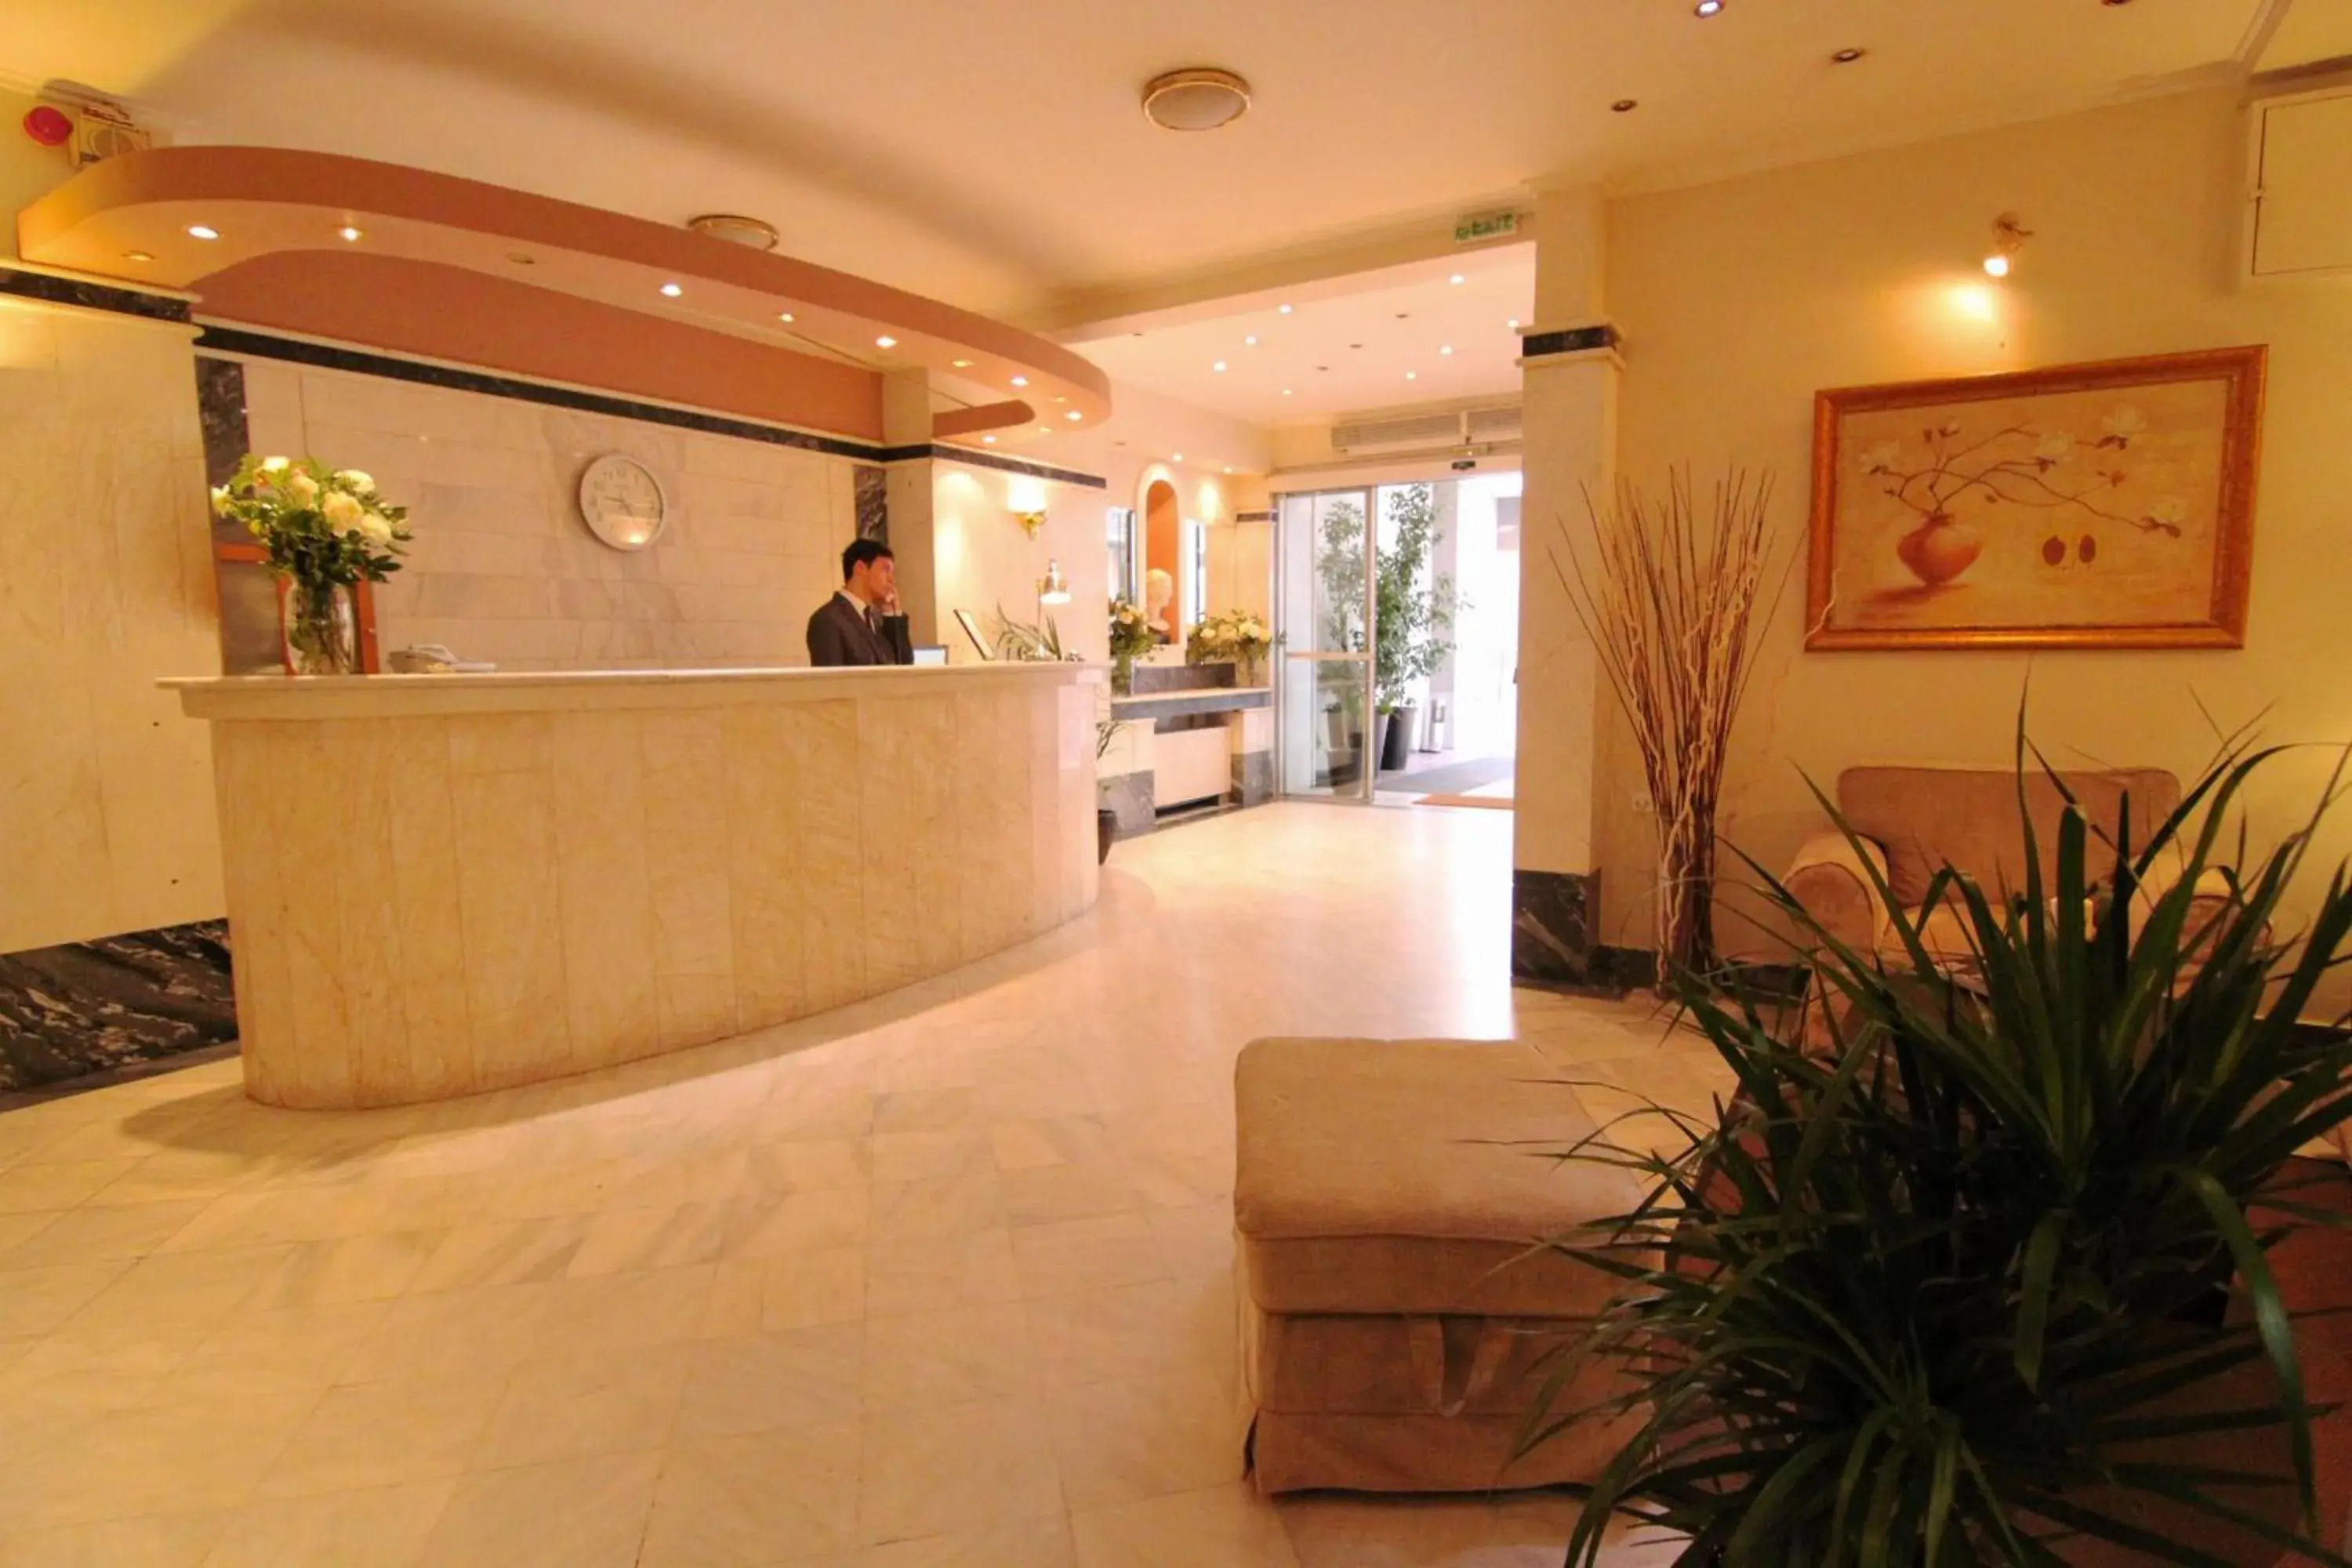 Lobby or reception, Lobby/Reception in Achillion Hotel